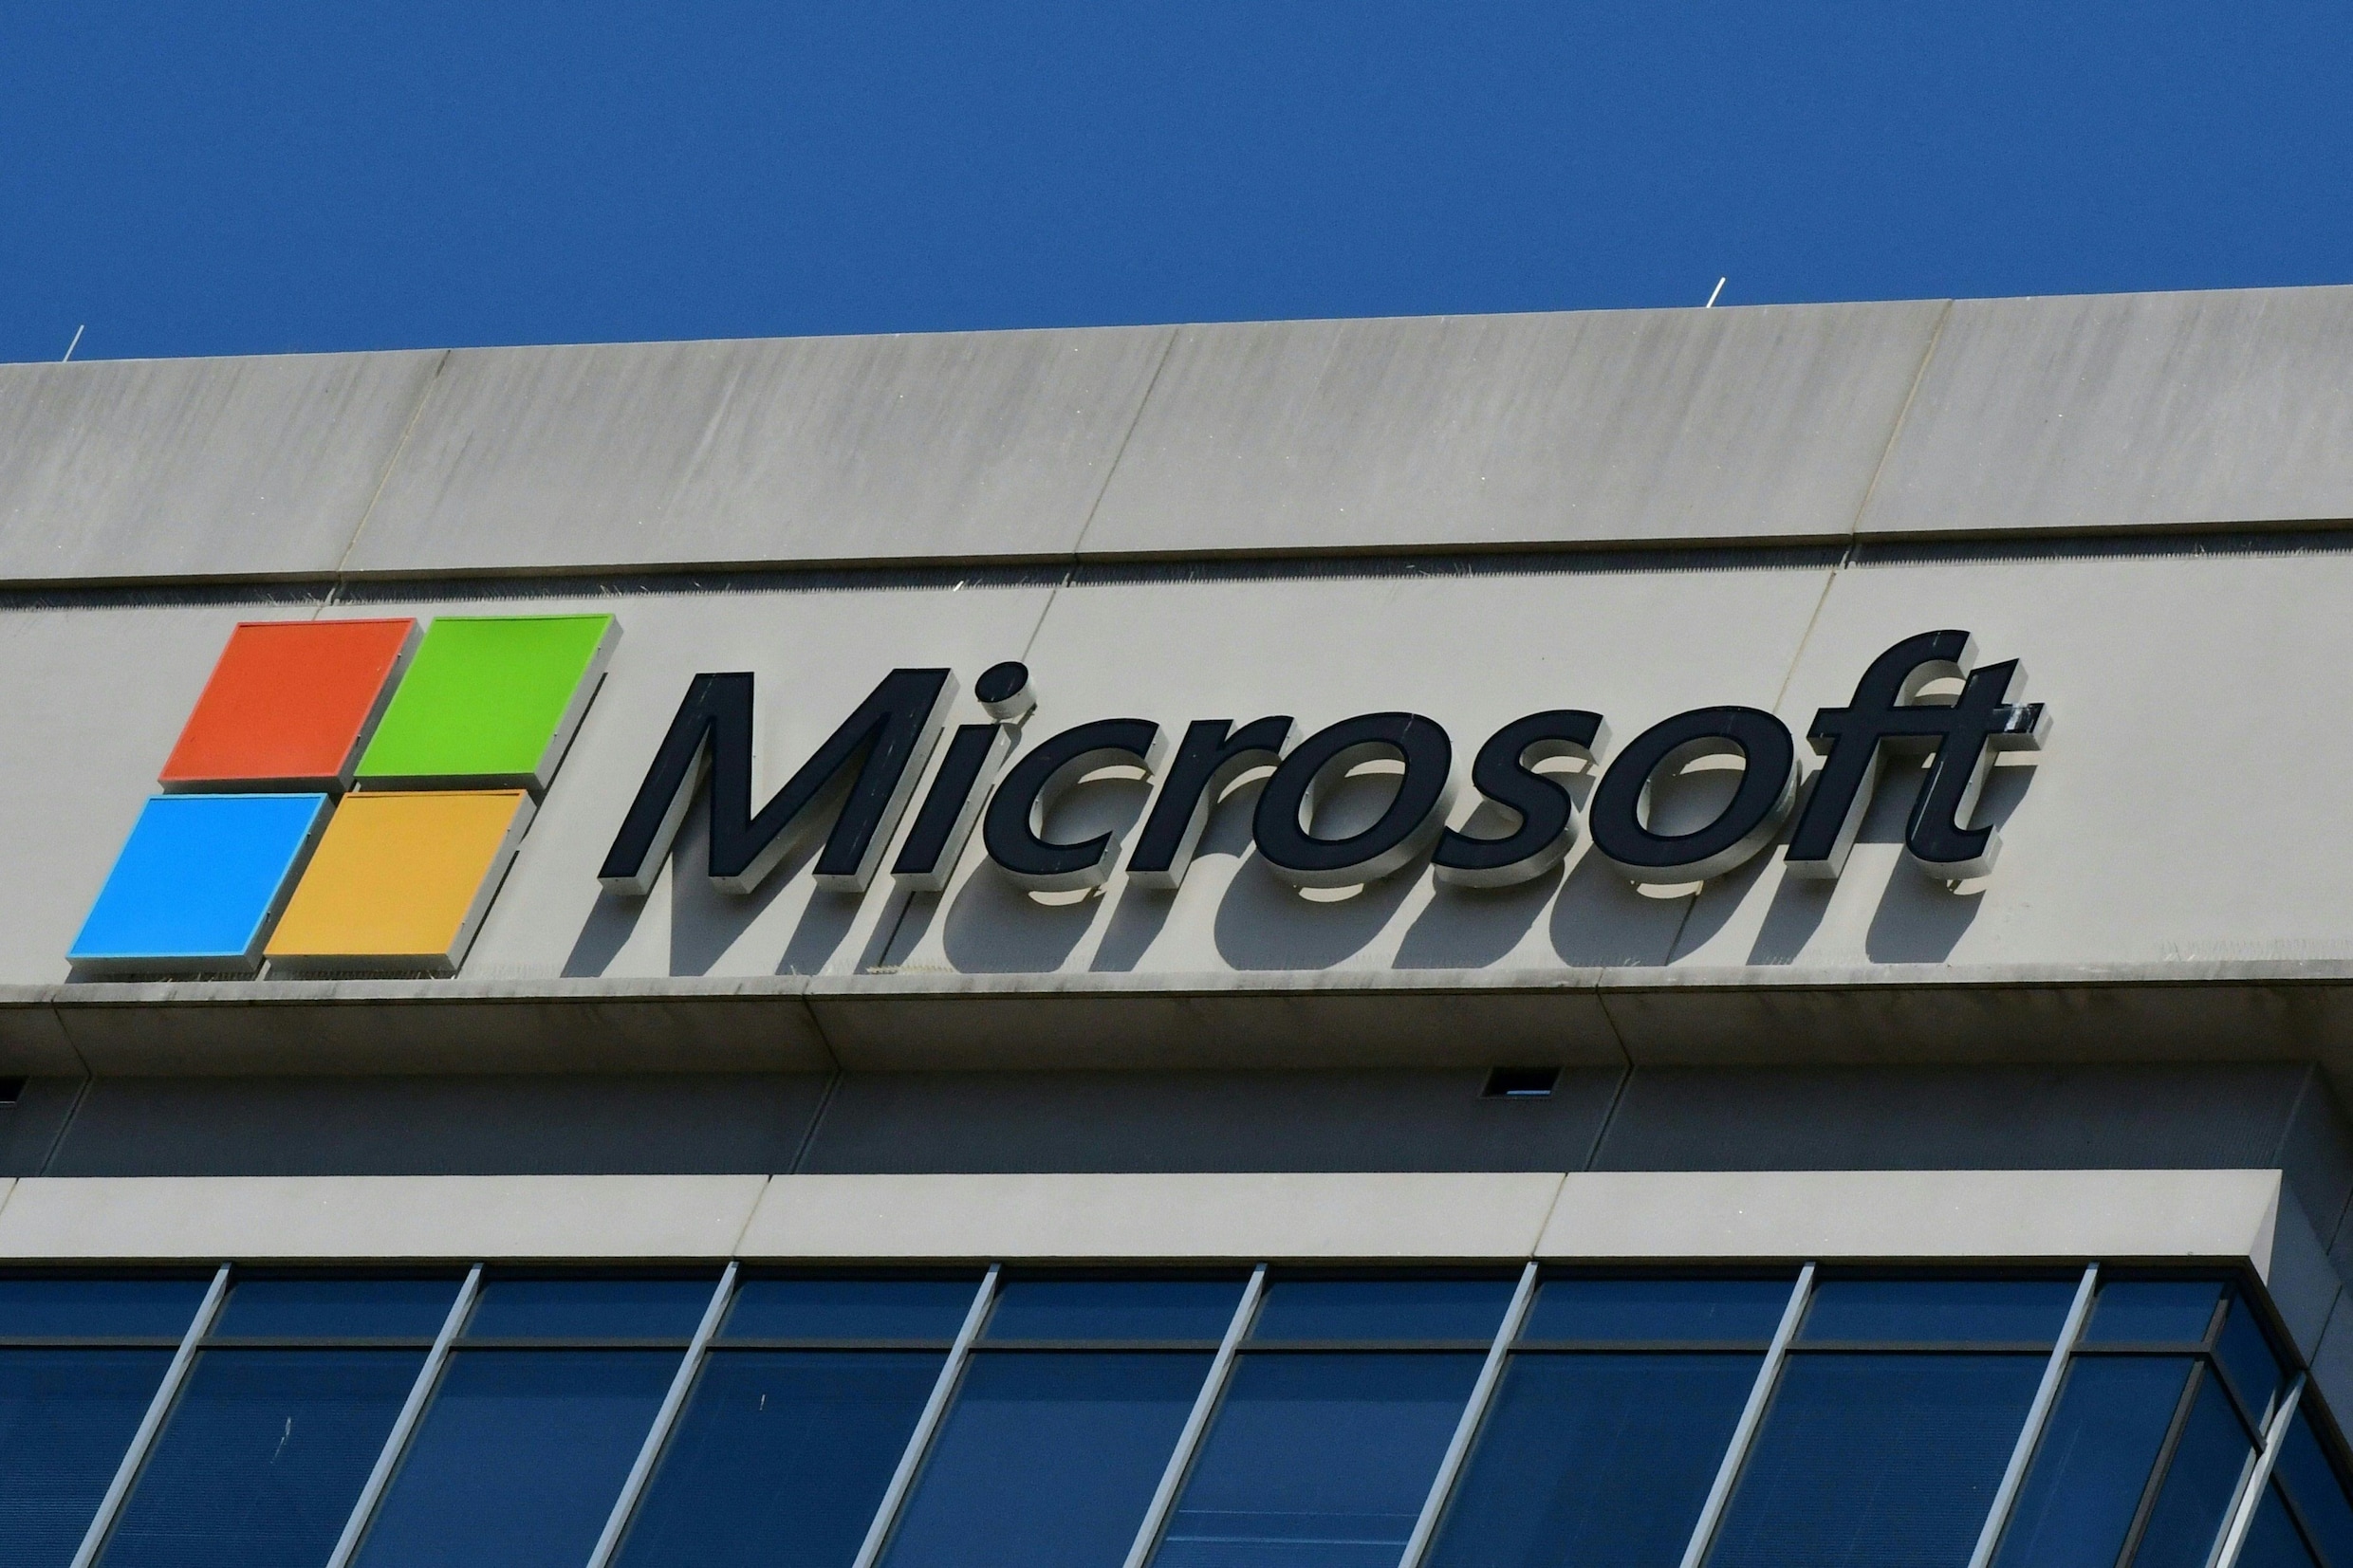 Microsoft gaat 10.000 werknemers ontslaan om kosten terug te dringen en zet in op artificiële intelligentie